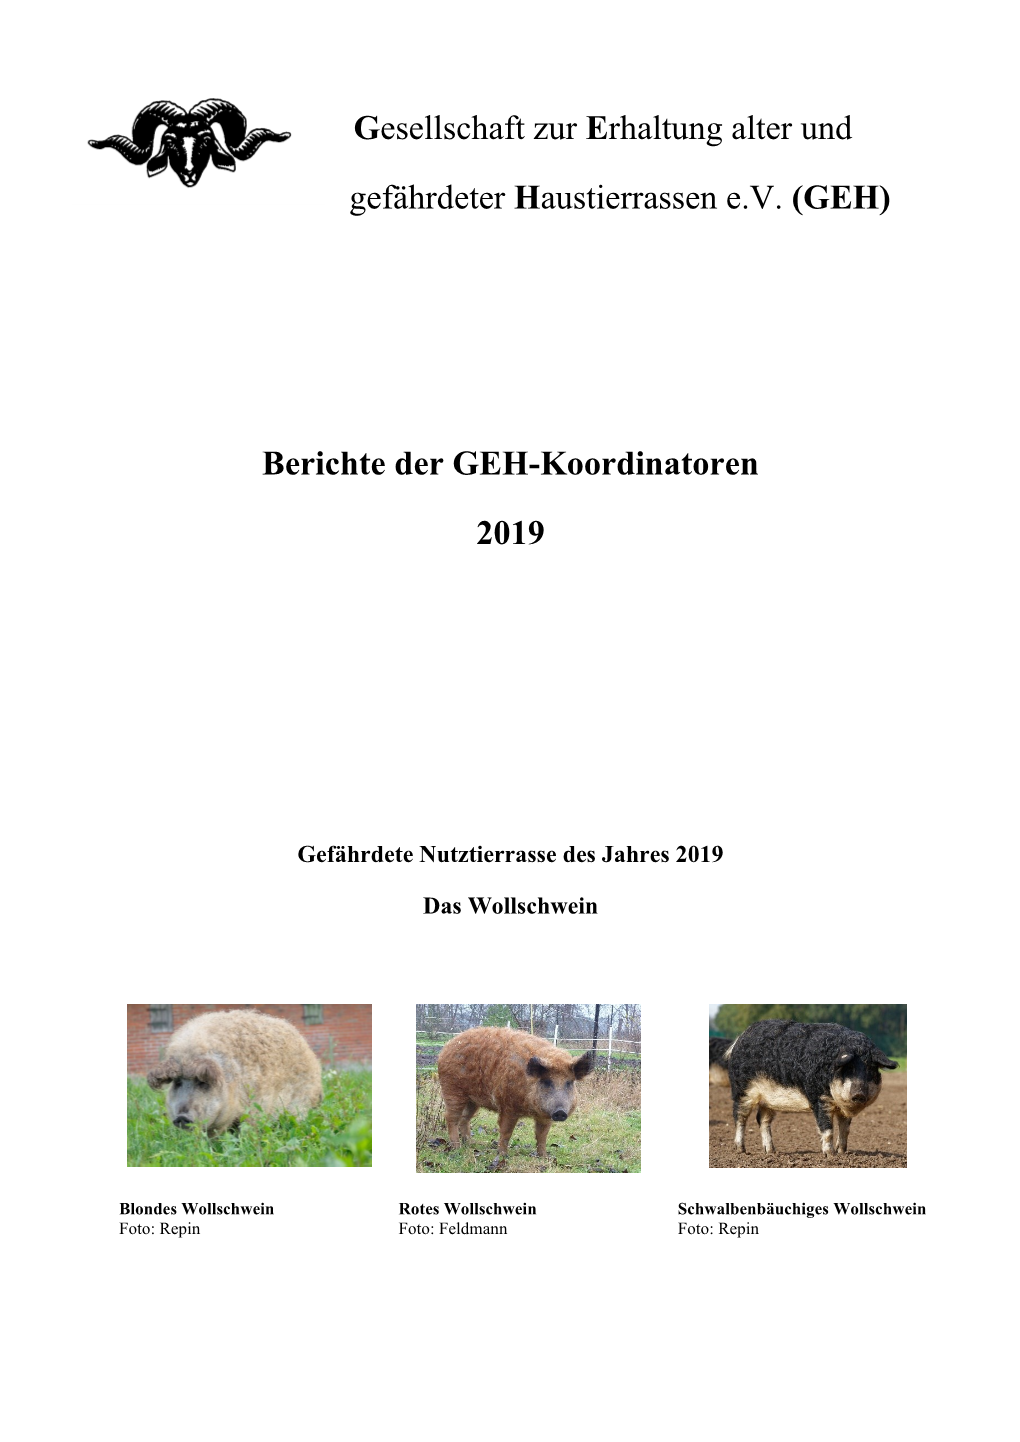 Gesellschaft Zur Erhaltung Alter Und Gefährdeter Haustierrassen E.V. (GEH) Berichte Der GEH-Koordinatoren 2019